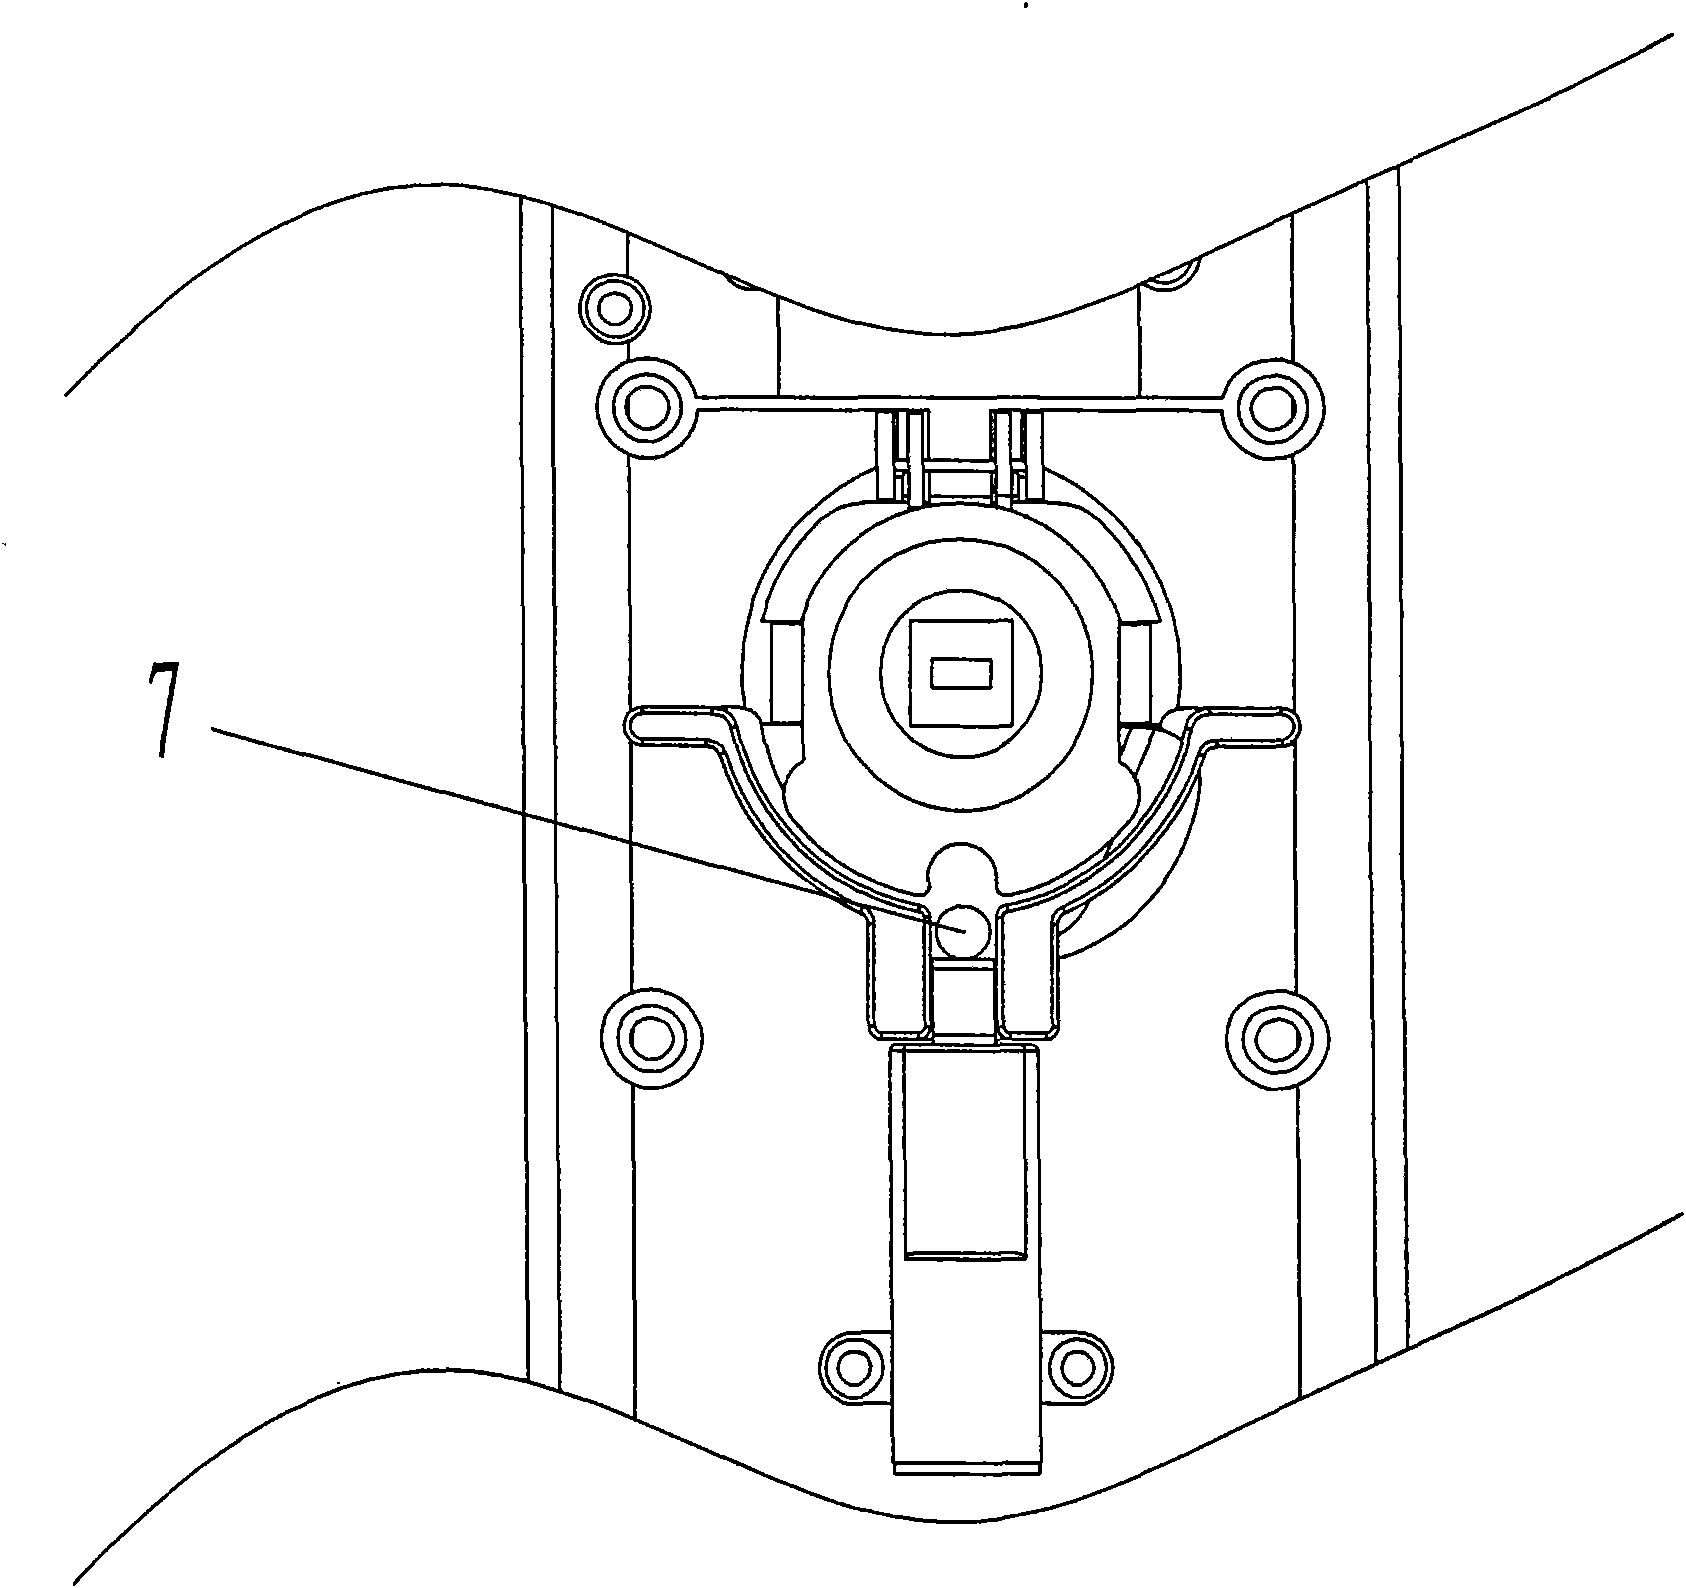 Bidirectional idling clutch mechanism